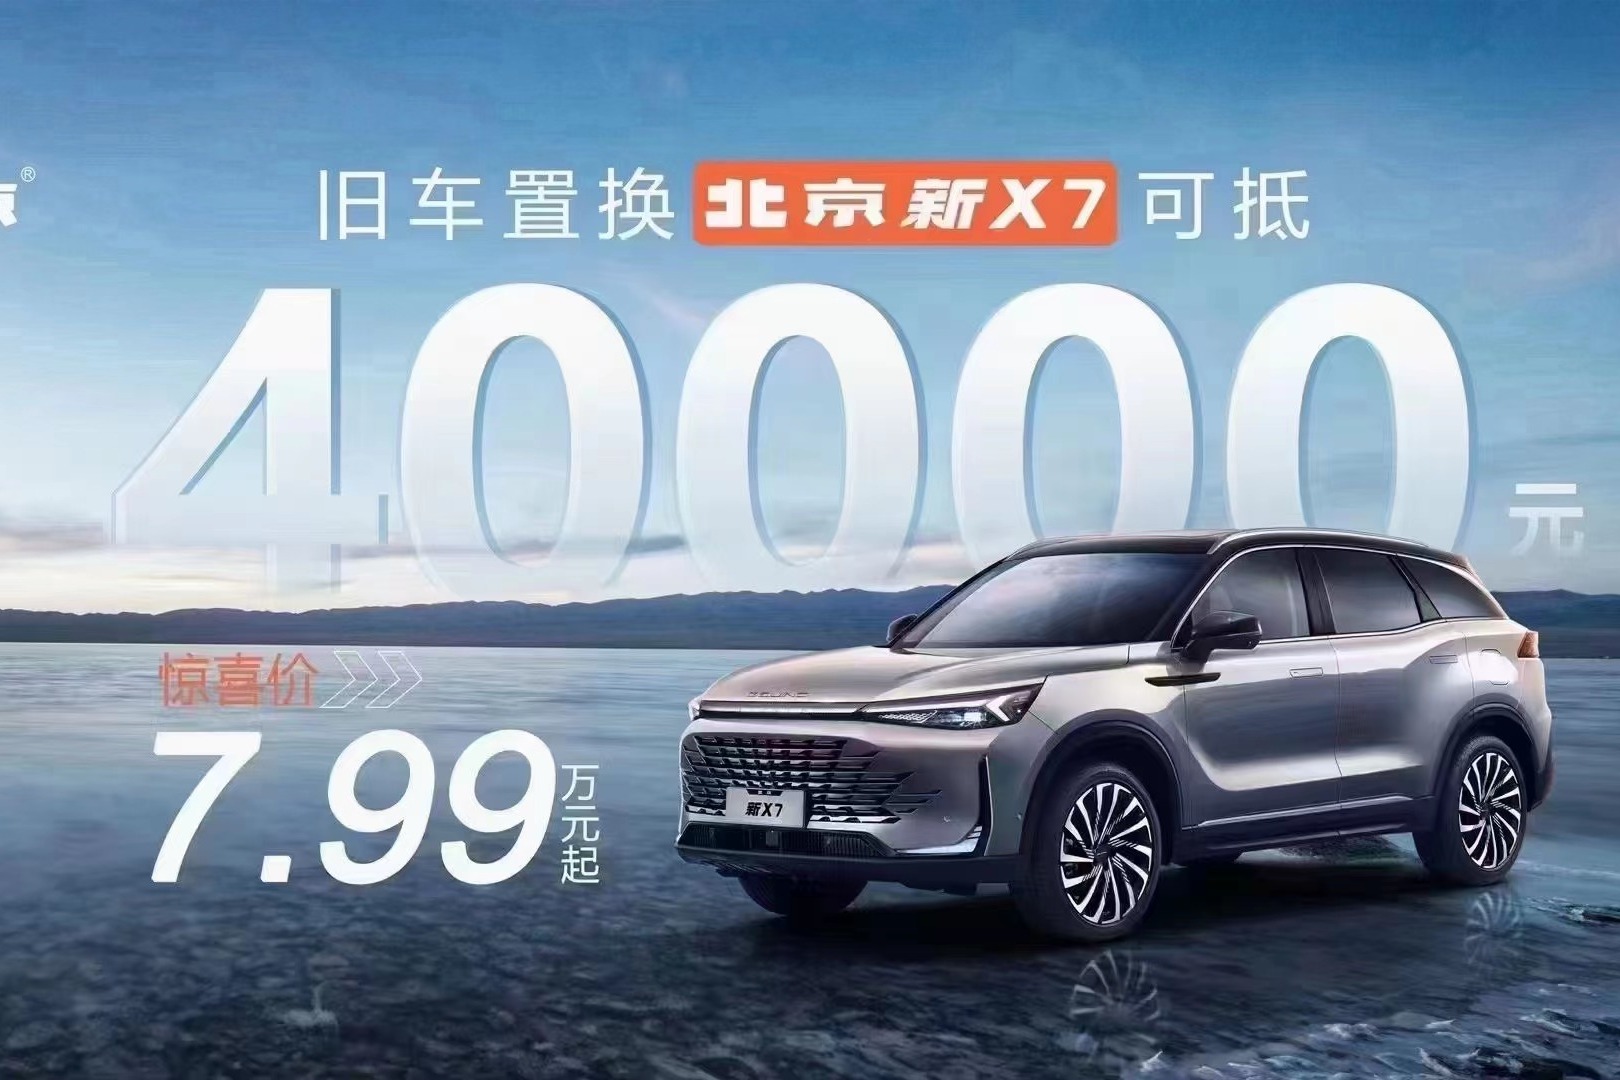 旧车置换北京新X7可抵4万元